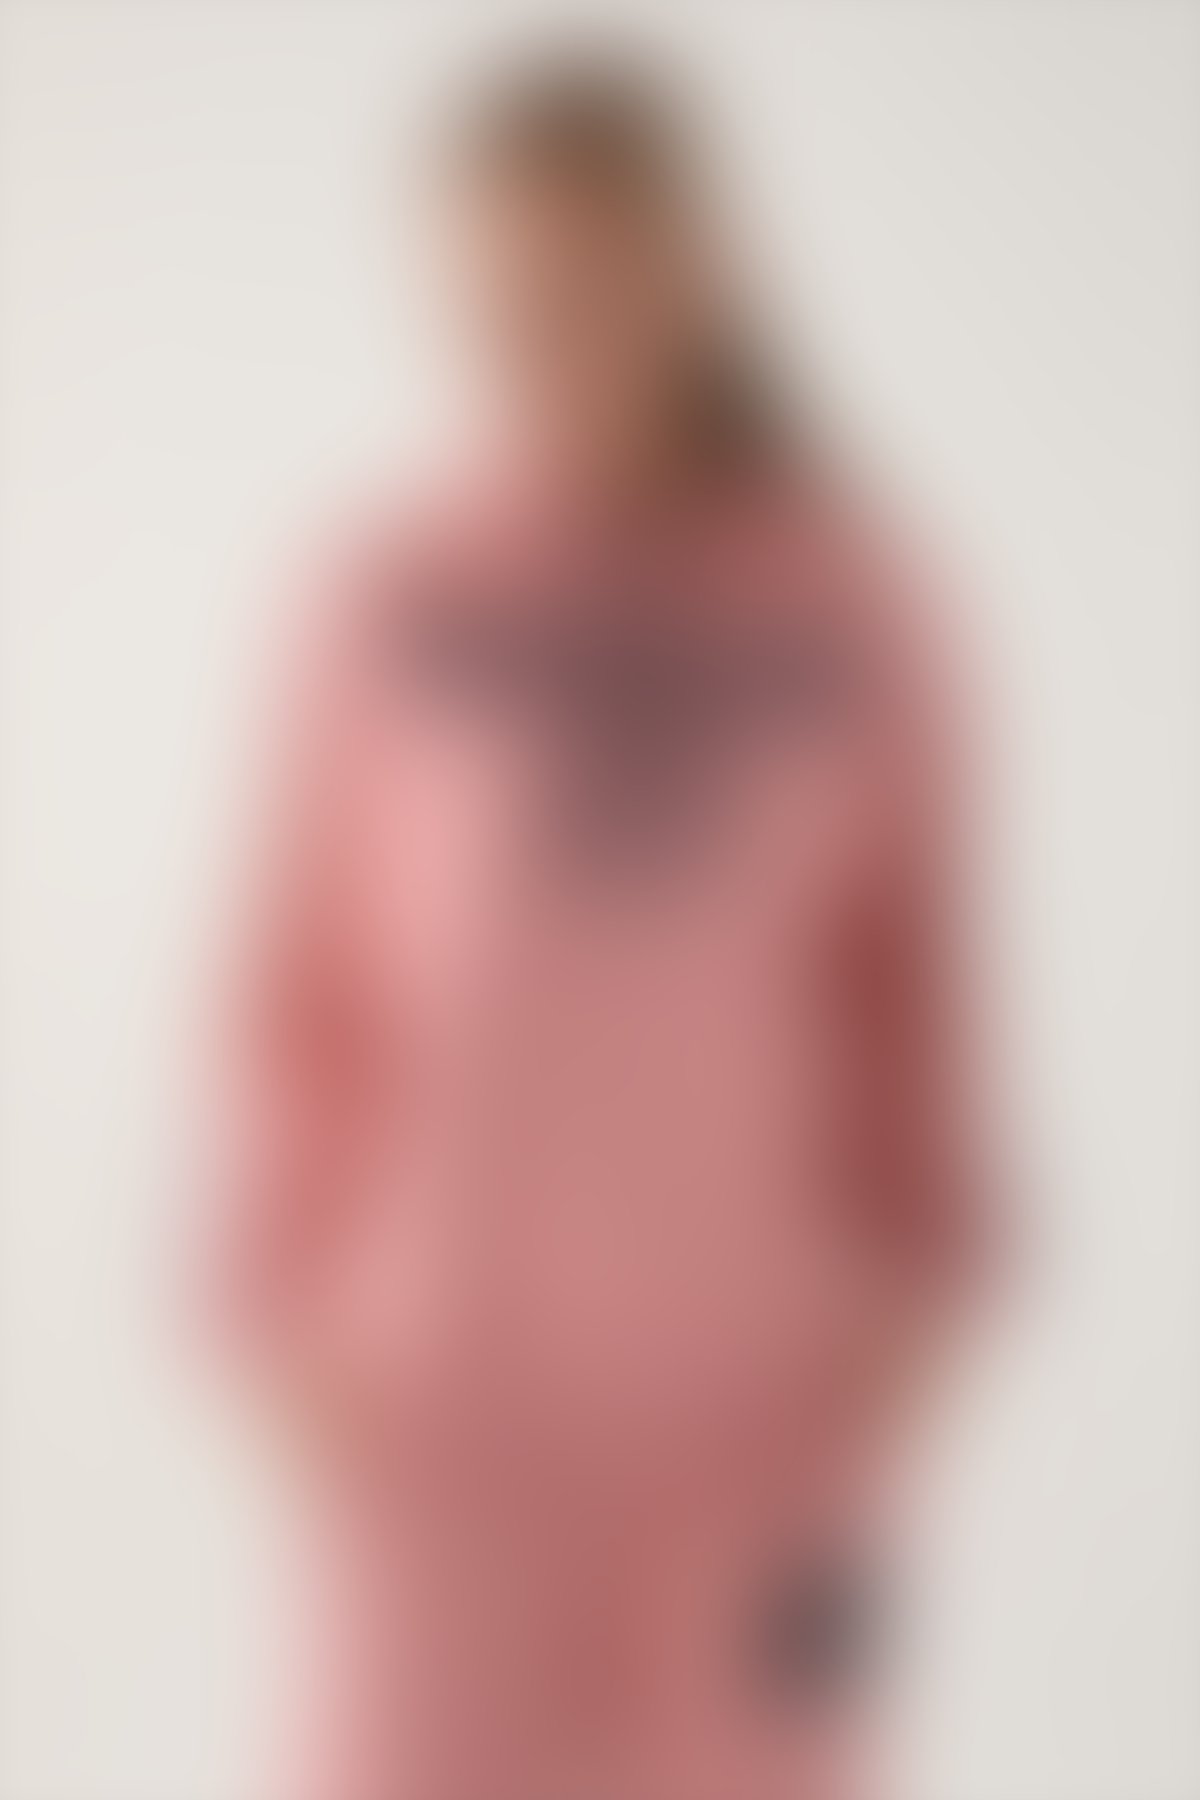 YALE - Yale Pembe Kapüşonlu Baskı Detay Kadın Sweatshirt